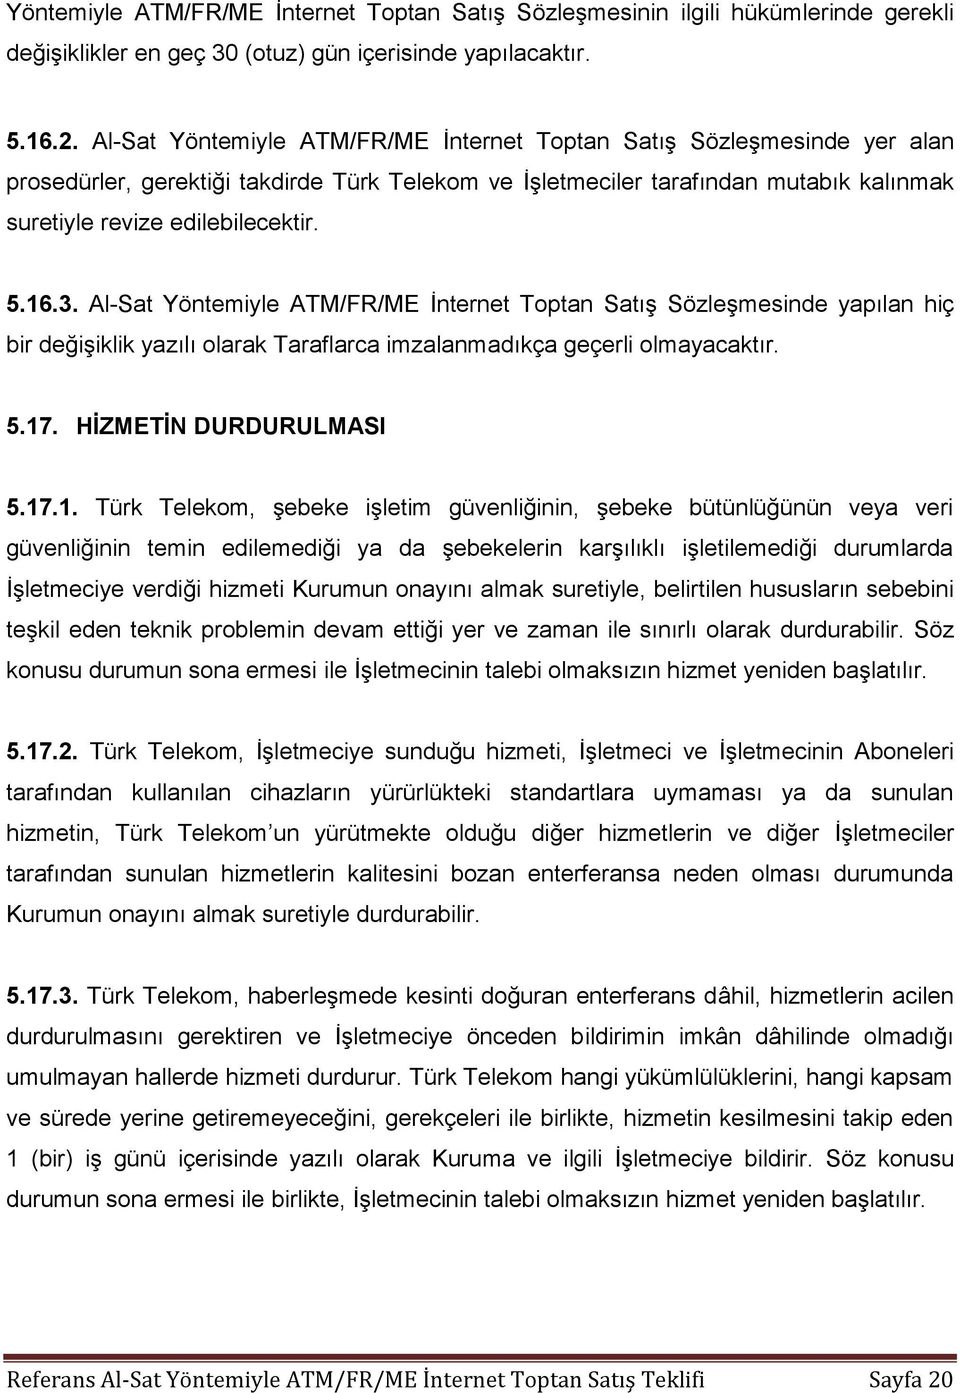 16.3. Al-Sat Yöntemiyle ATM/FR/ME İnternet Toptan Satış Sözleşmesinde yapılan hiç bir değişiklik yazılı olarak Taraflarca imzalanmadıkça geçerli olmayacaktır. 5.17. HİZMETİN DURDURULMASI 5.17.1. Türk